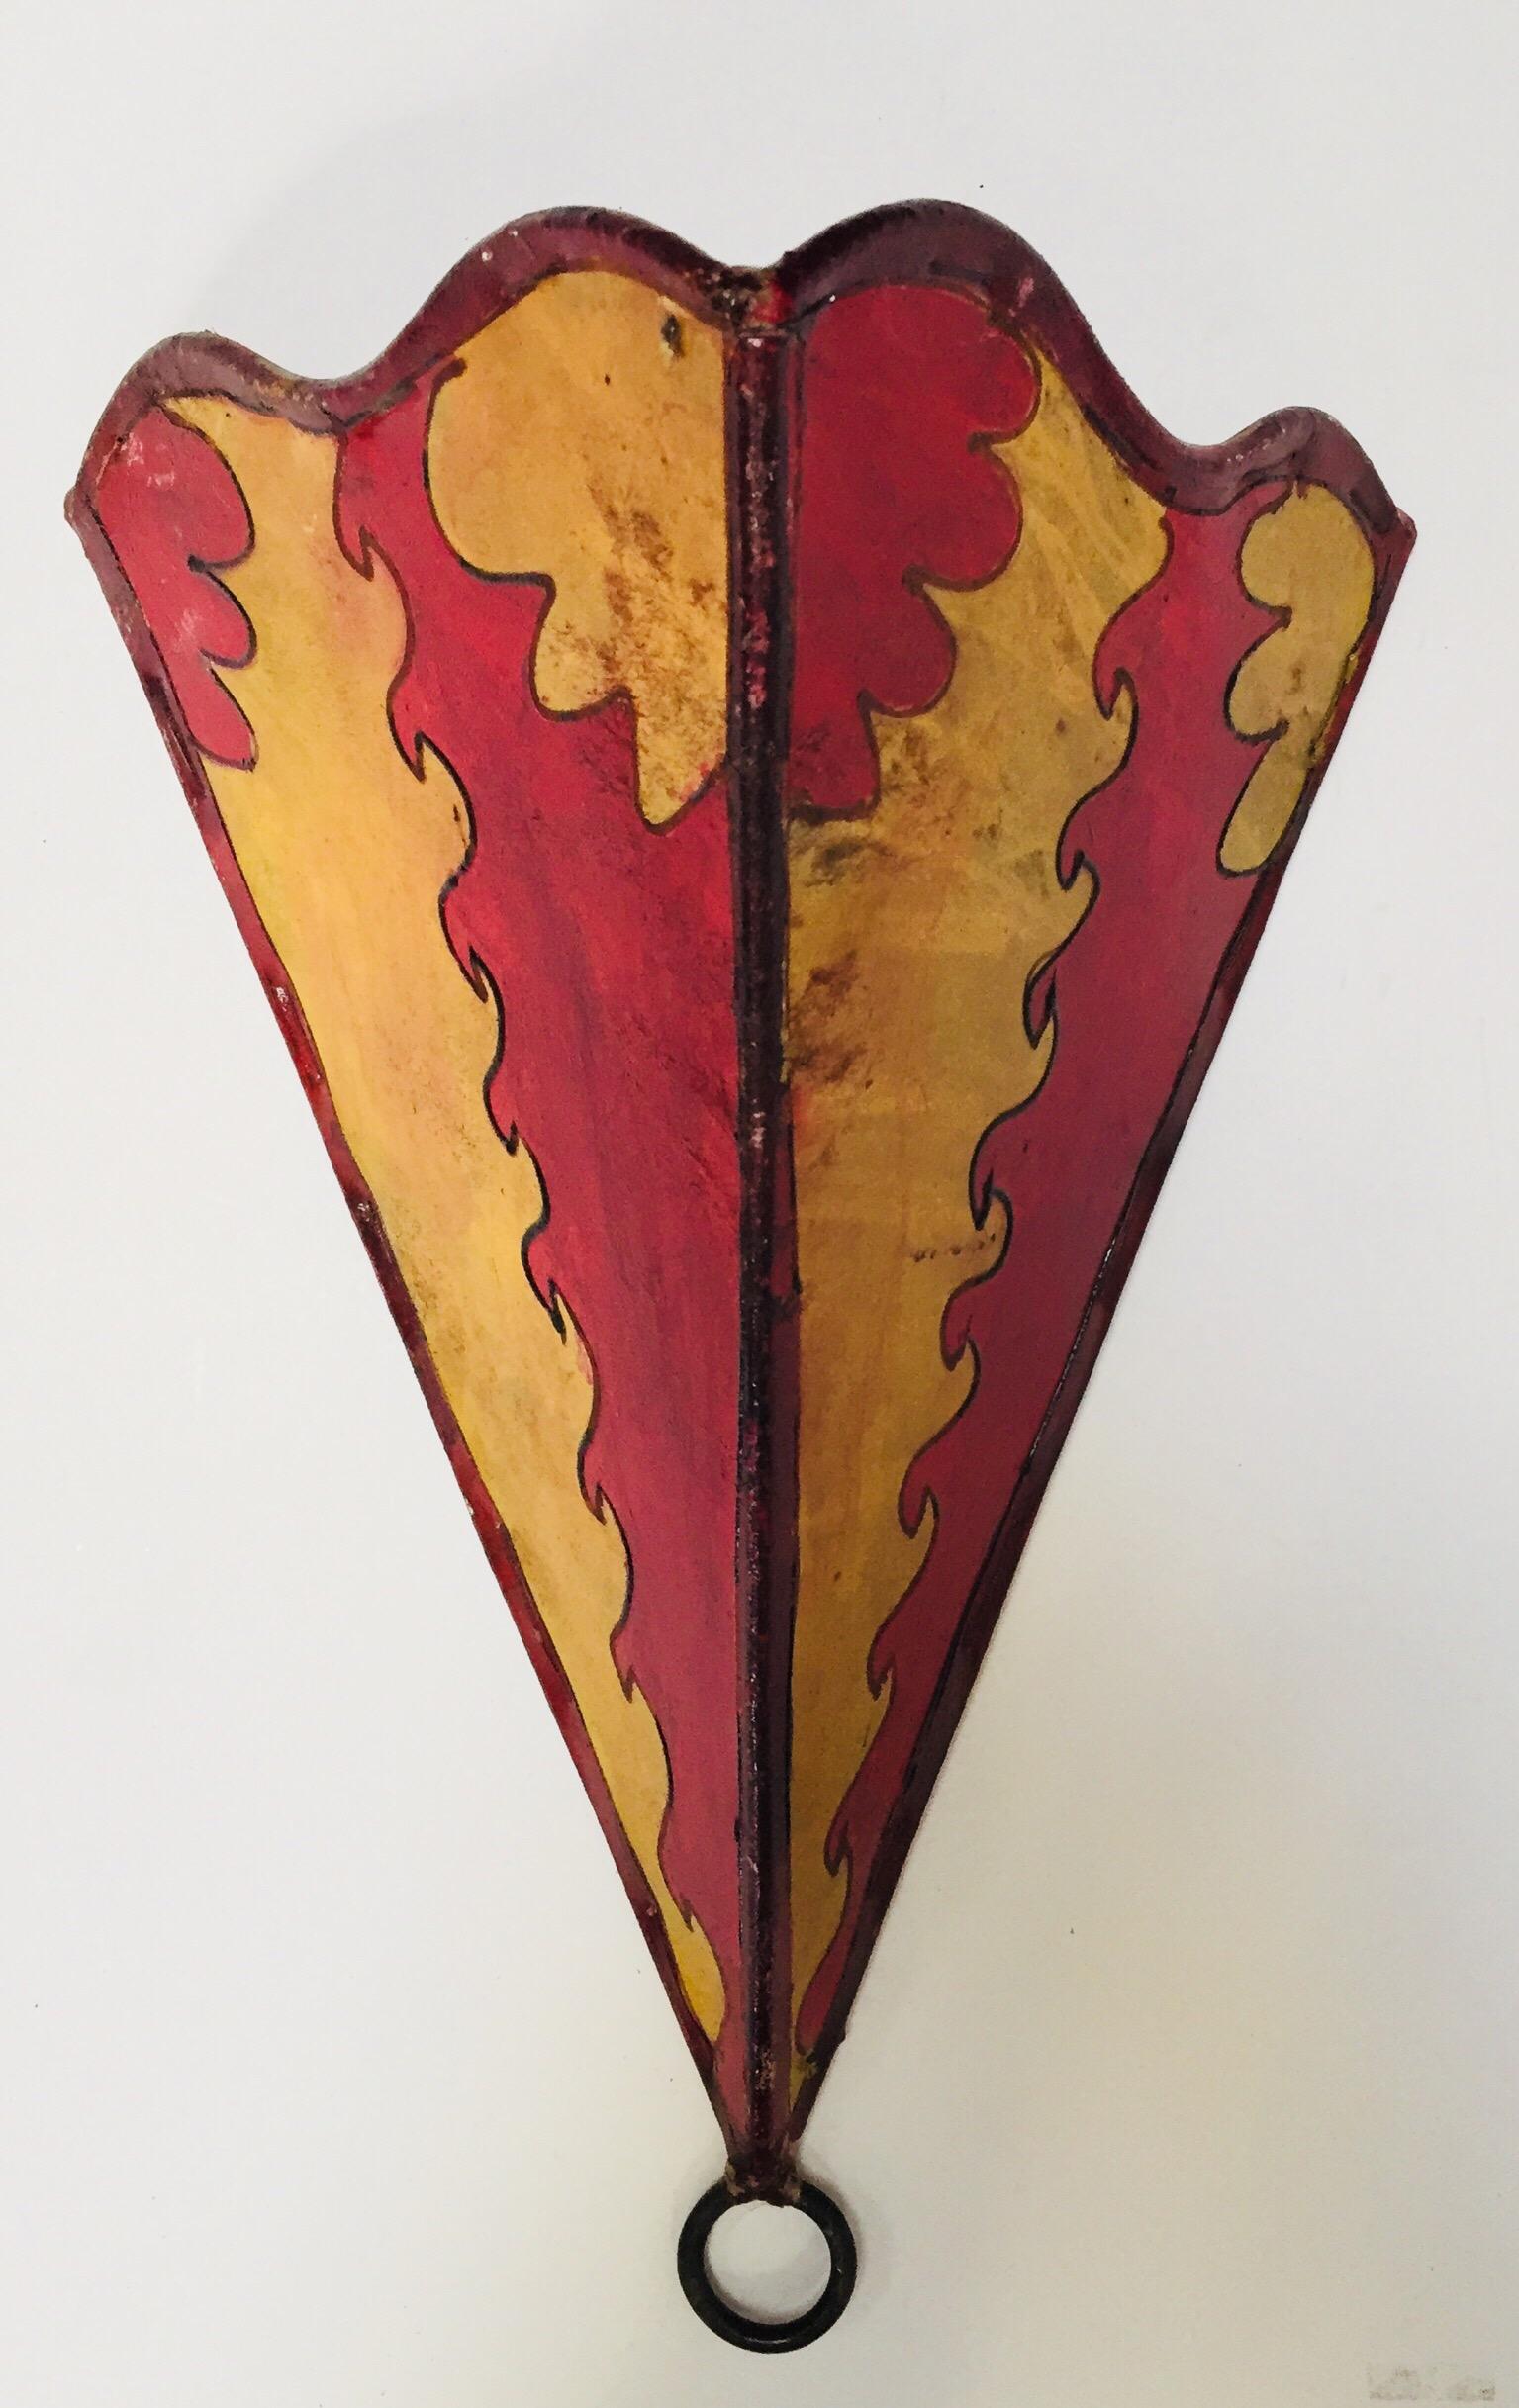 Ein Paar afrikanischer Stammeskunst Pergament Wandlampen mit einem großen Dreieck Haut Form auf Eisen und handbemalte Oberfläche genäht.
Diese Kunstwerke können auch als Lampenschirm für die Wand verwendet werden.
Der mit Pergament überzogene